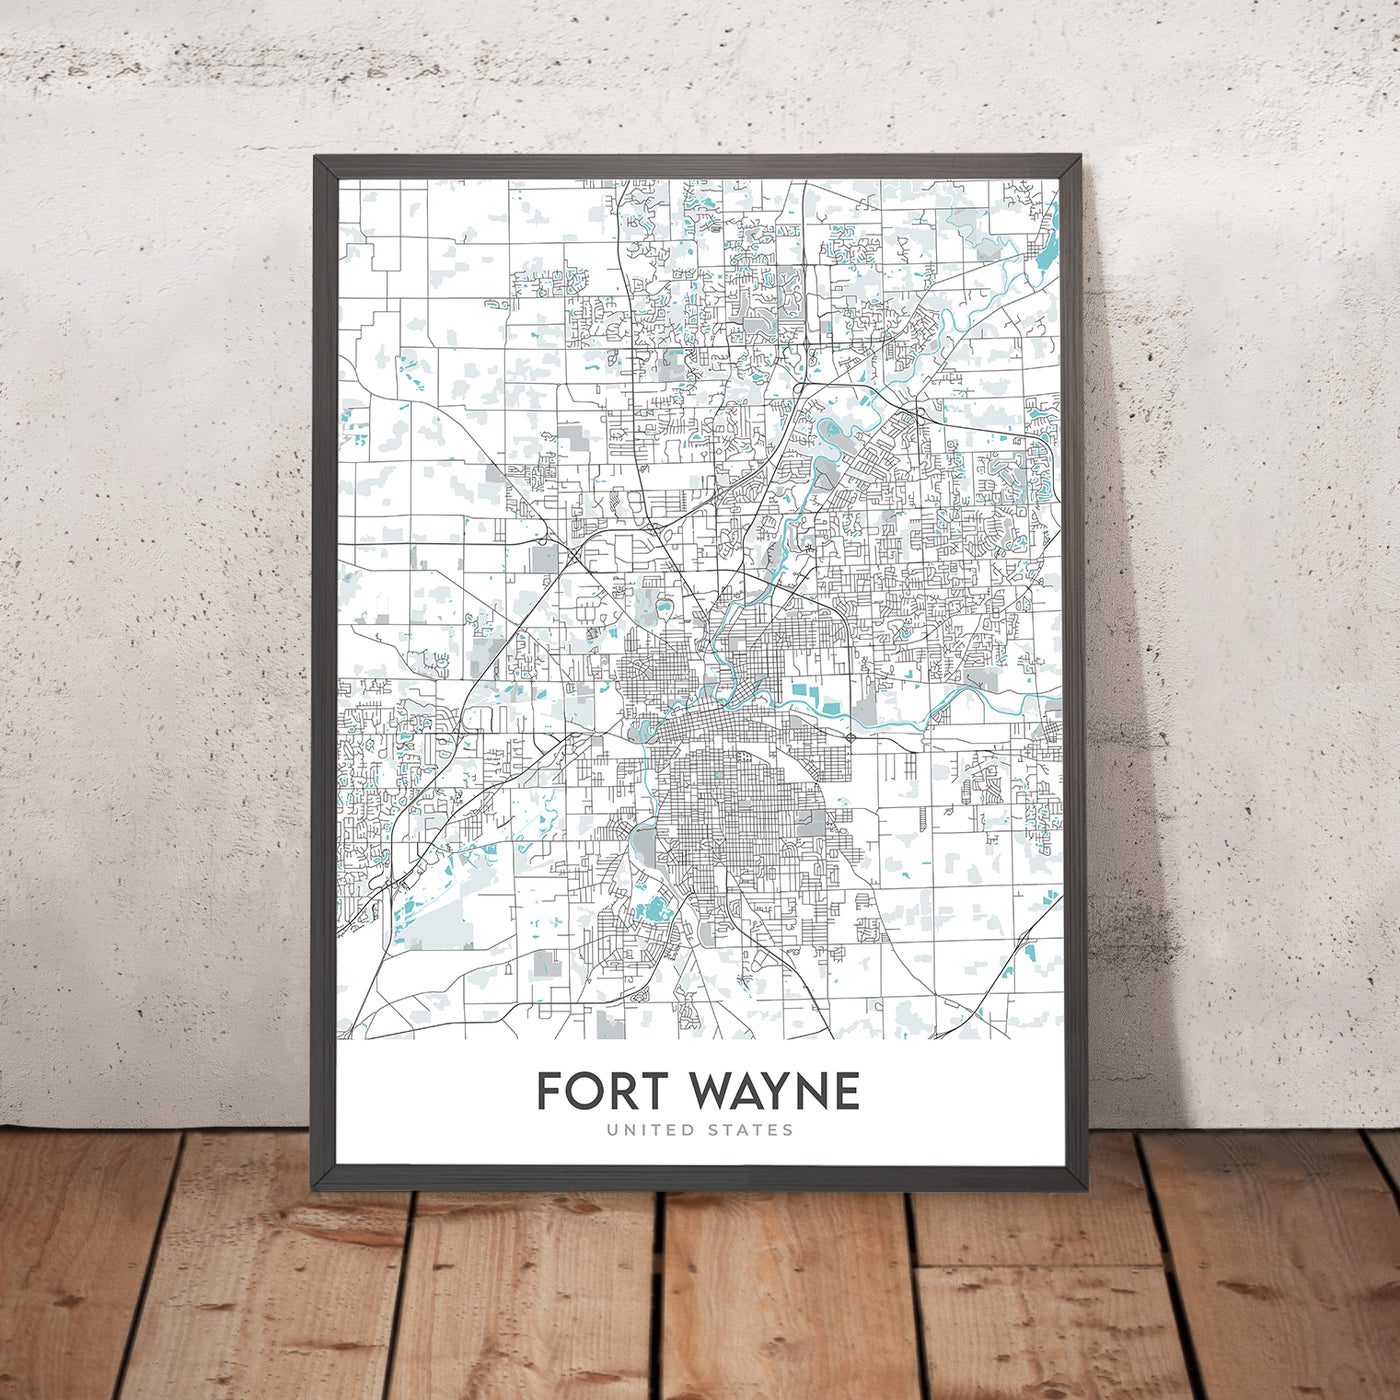 Moderner Stadtplan von Fort Wayne, IN: Innenstadt, IPFW, Parkview, Coliseum Blvd, St Rd 9